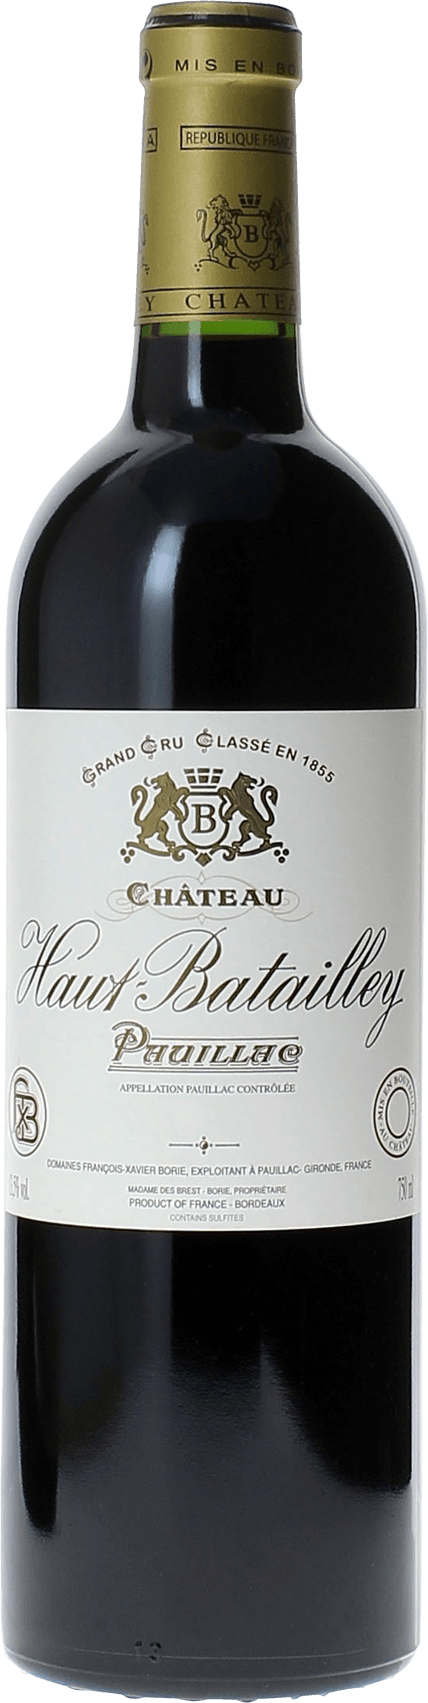 Haut batailley 2018 5 me Grand cru class Pauillac, Bordeaux rouge